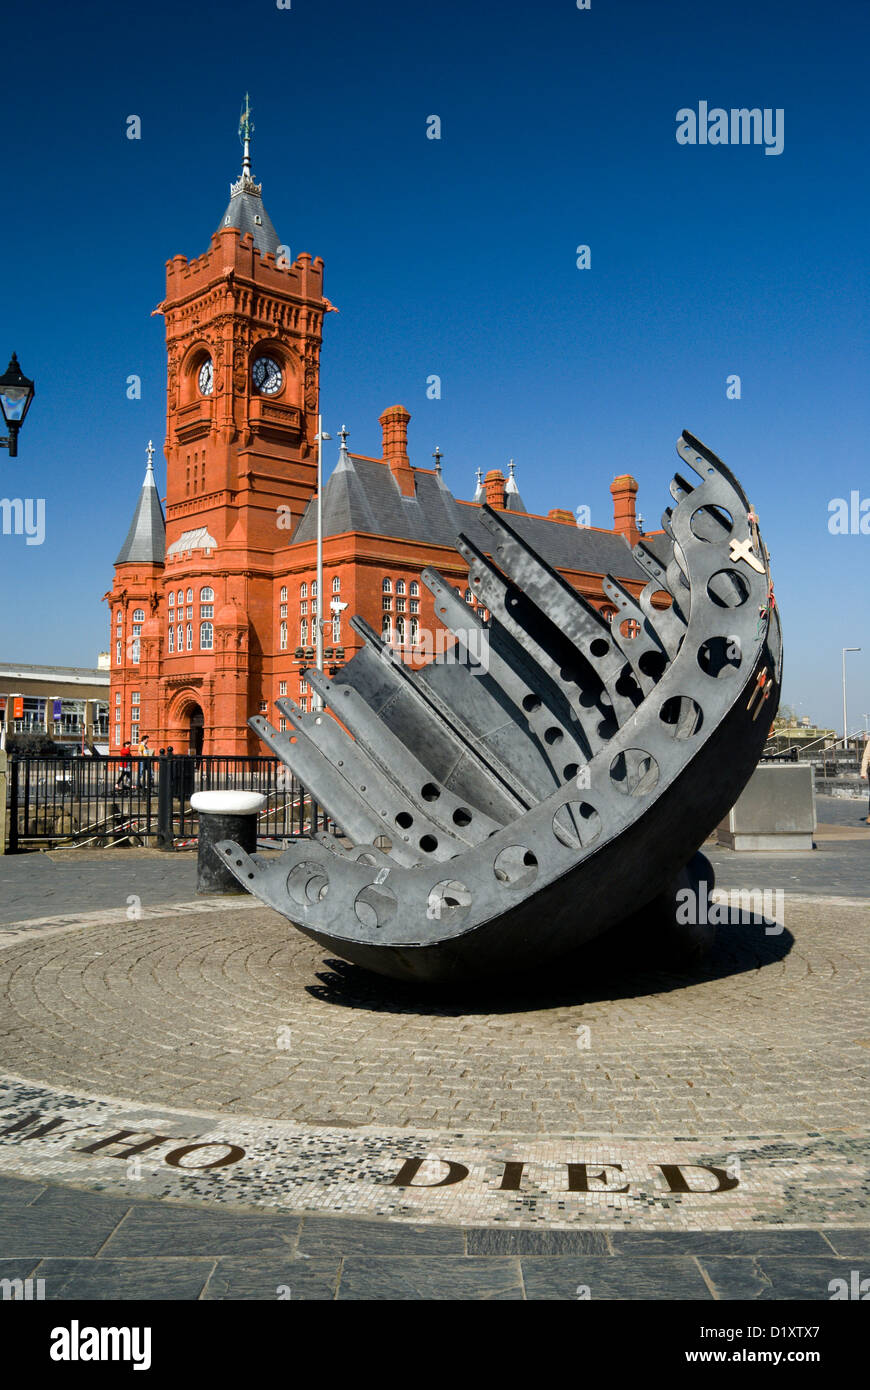 Bâtiment victorien Pierhead du marin marchand et War Memorial, la baie de Cardiff, Cardiff, Pays de Galles du Sud. Banque D'Images